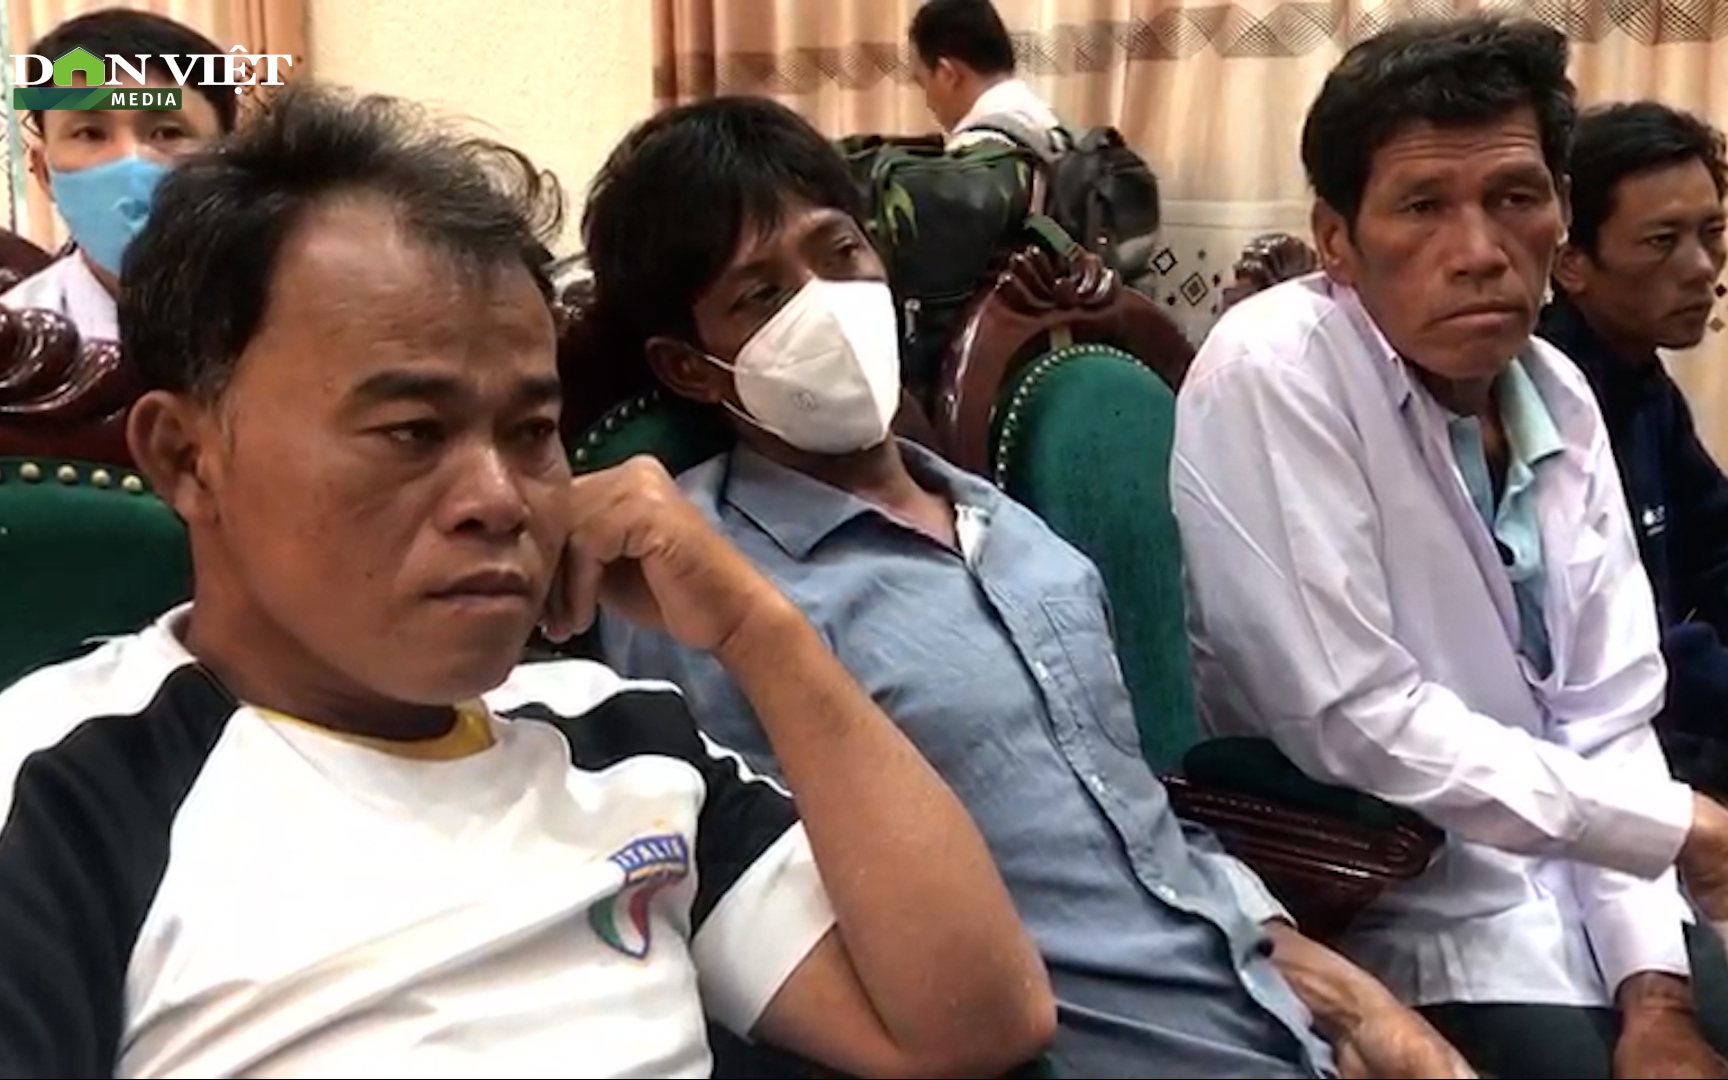 Gia đình mừng tủi đón 5 ngư dân Bình Thuận từ cõi chết trở về một cách “kỳ diệu”